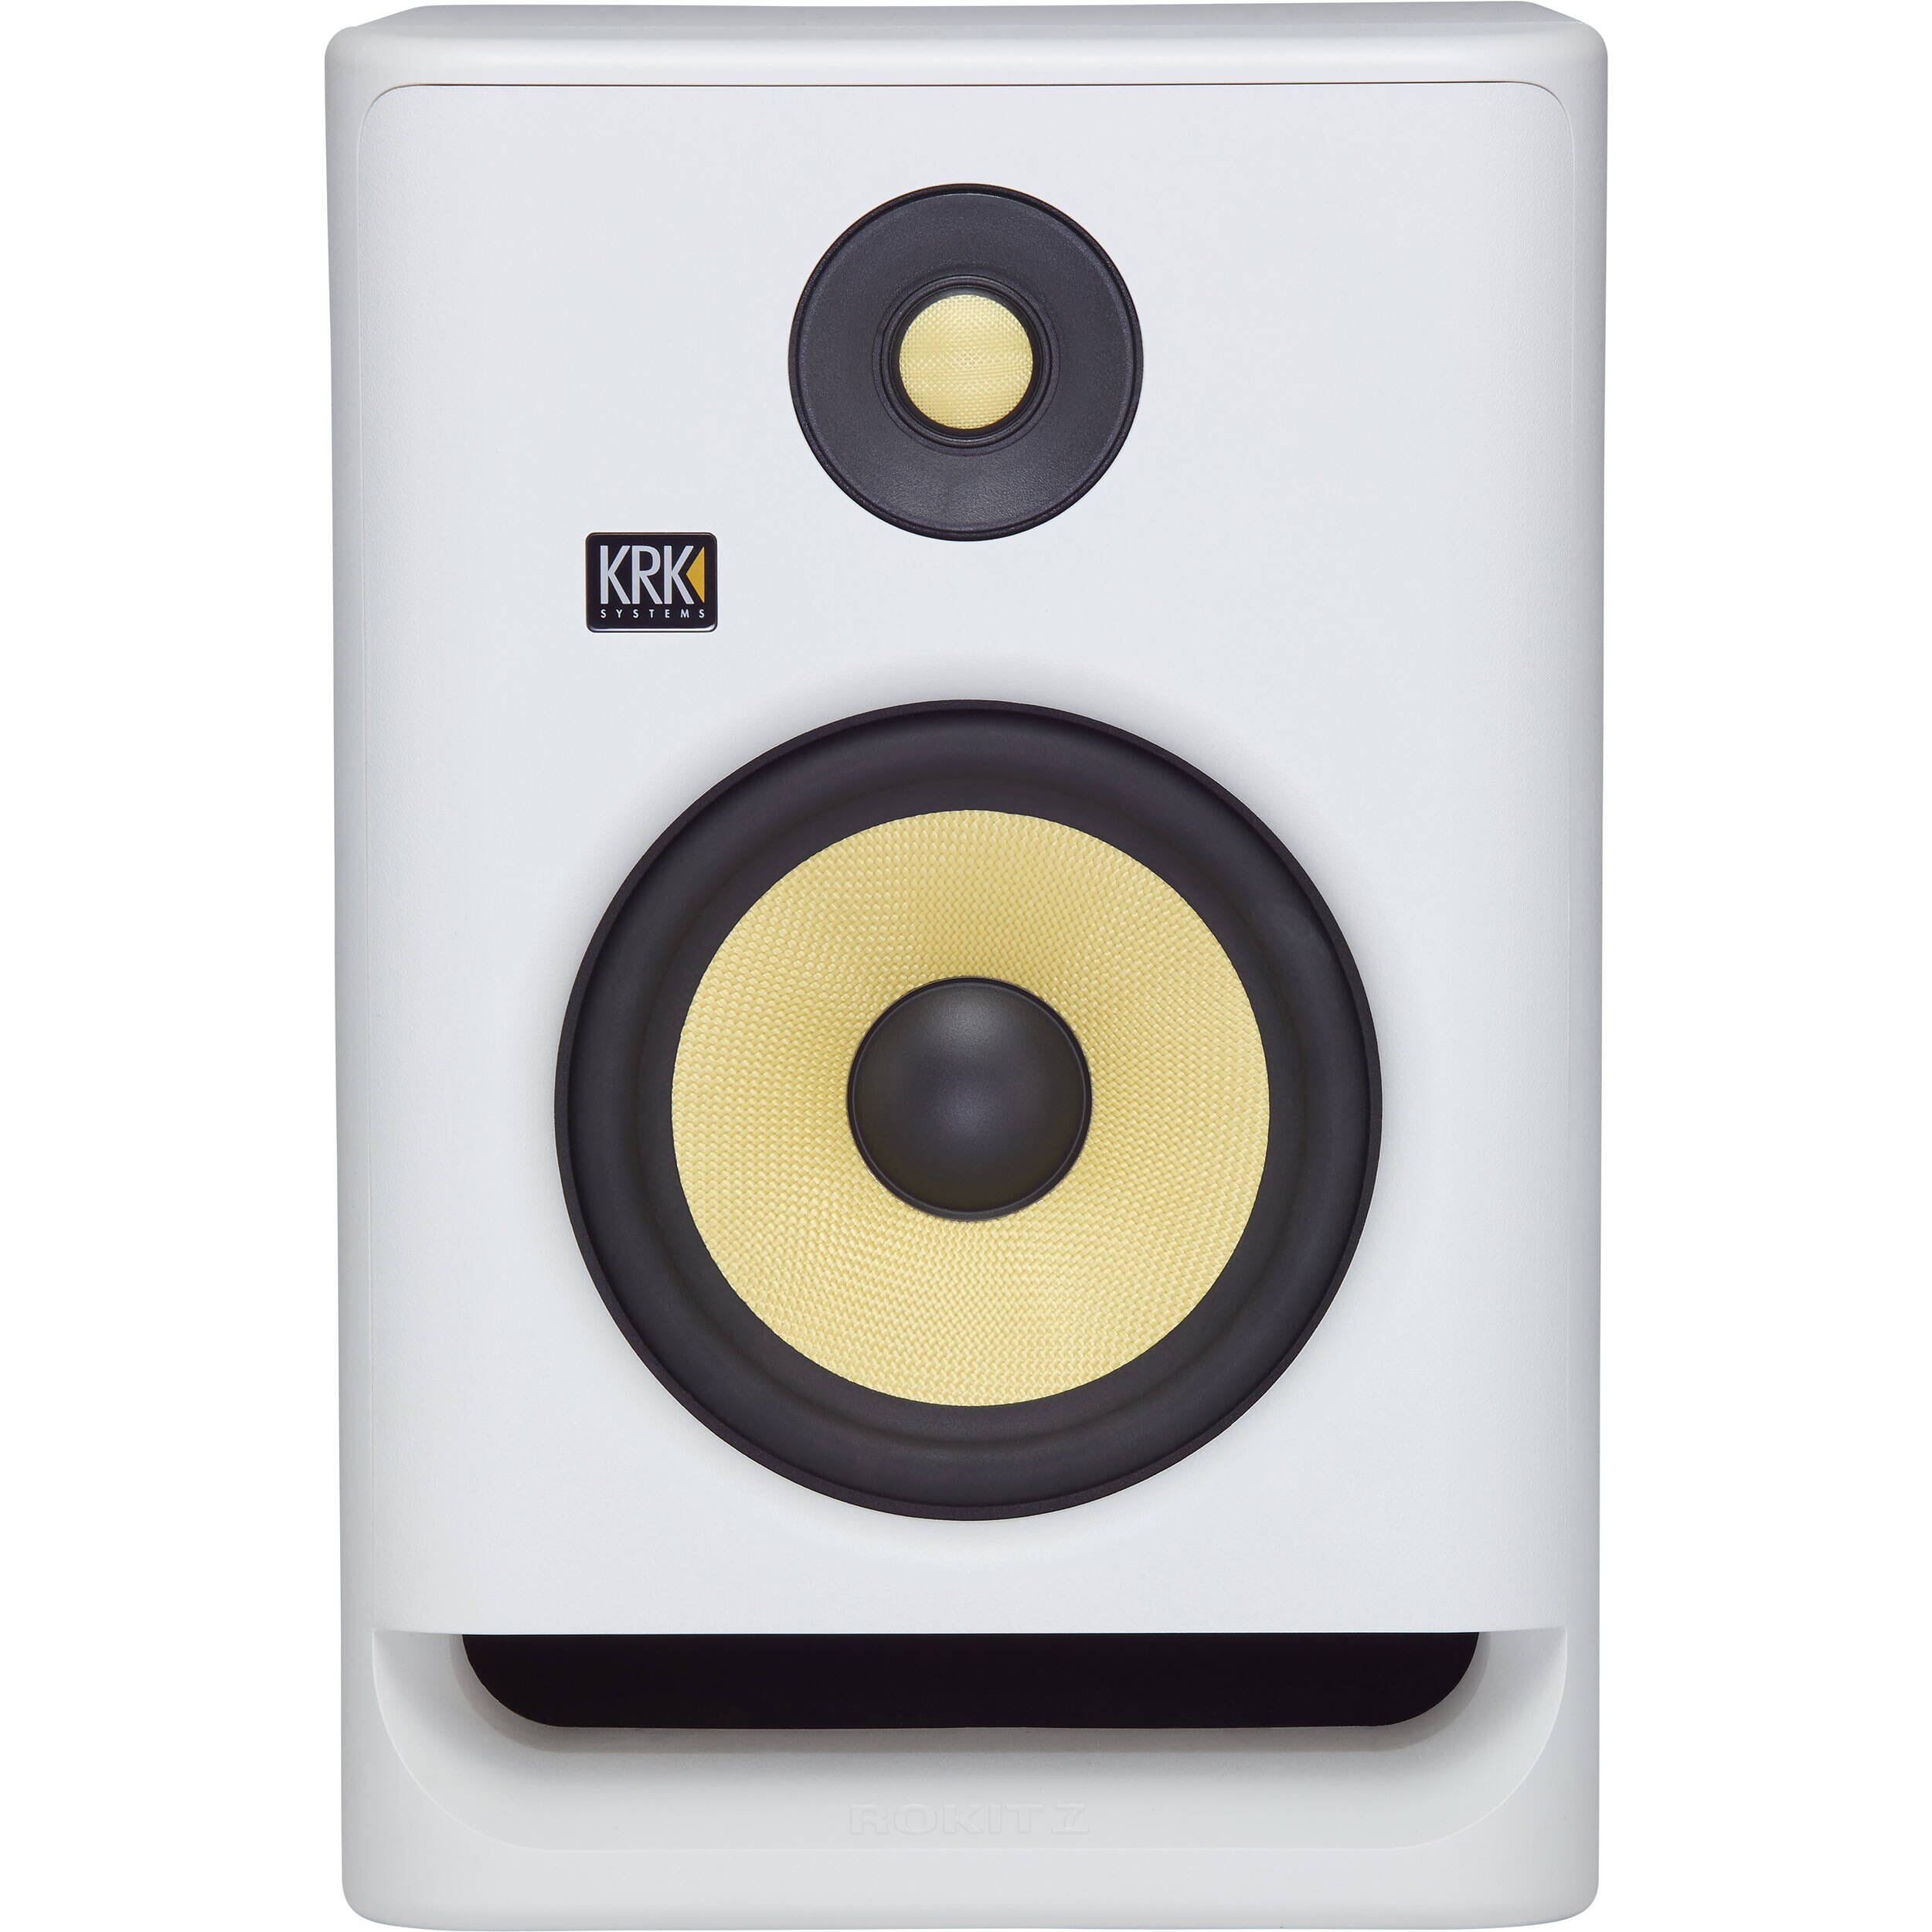 KRK Rokit 7 G4 White Noise Monitor de Estudio 7" (Nueva Generación) Monitores de Estudio KRK 